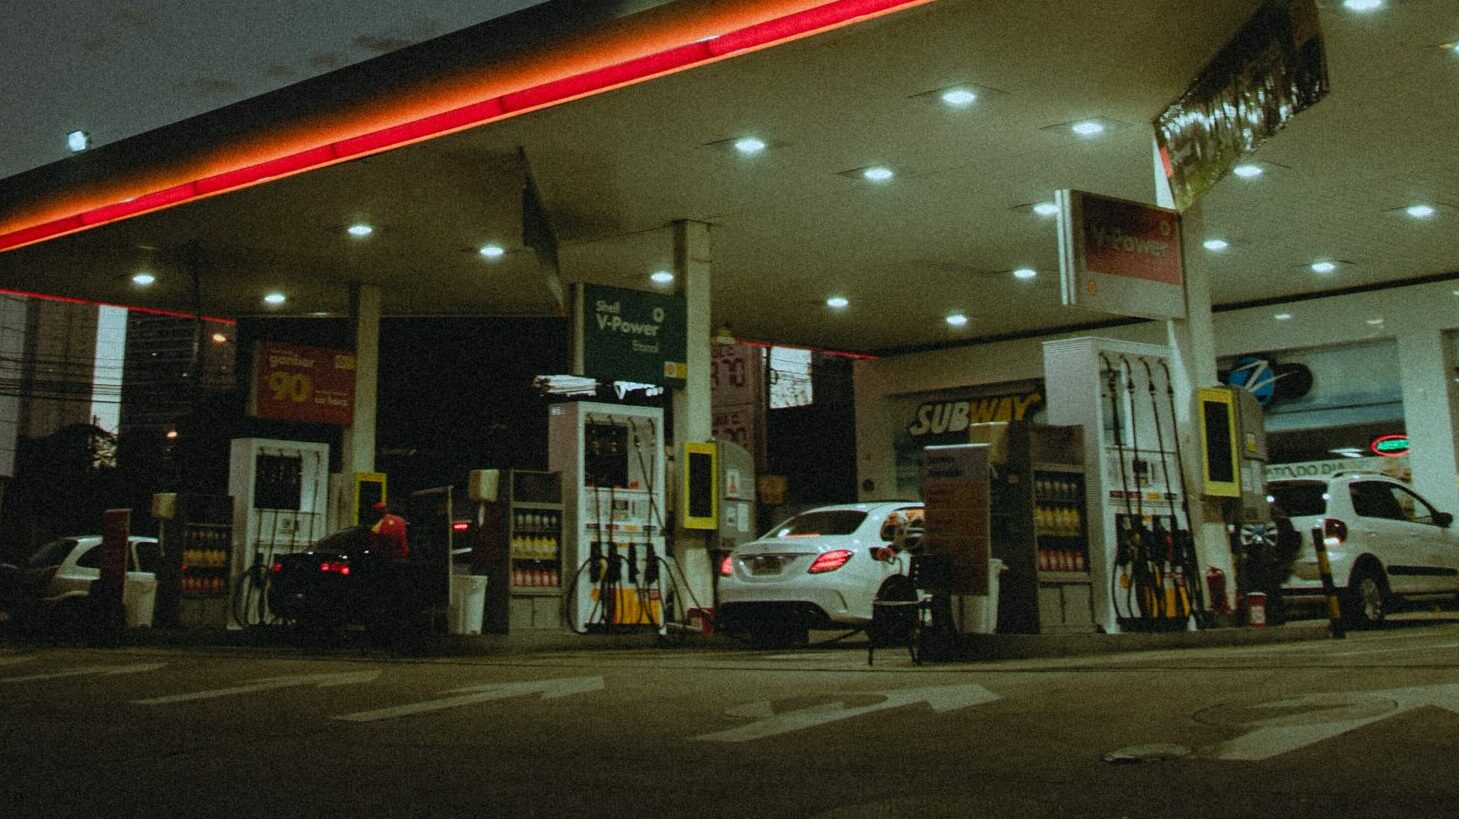 La compra de gasolina ante el pánico de que se acabe causa "serios problemas" en Reino Unido